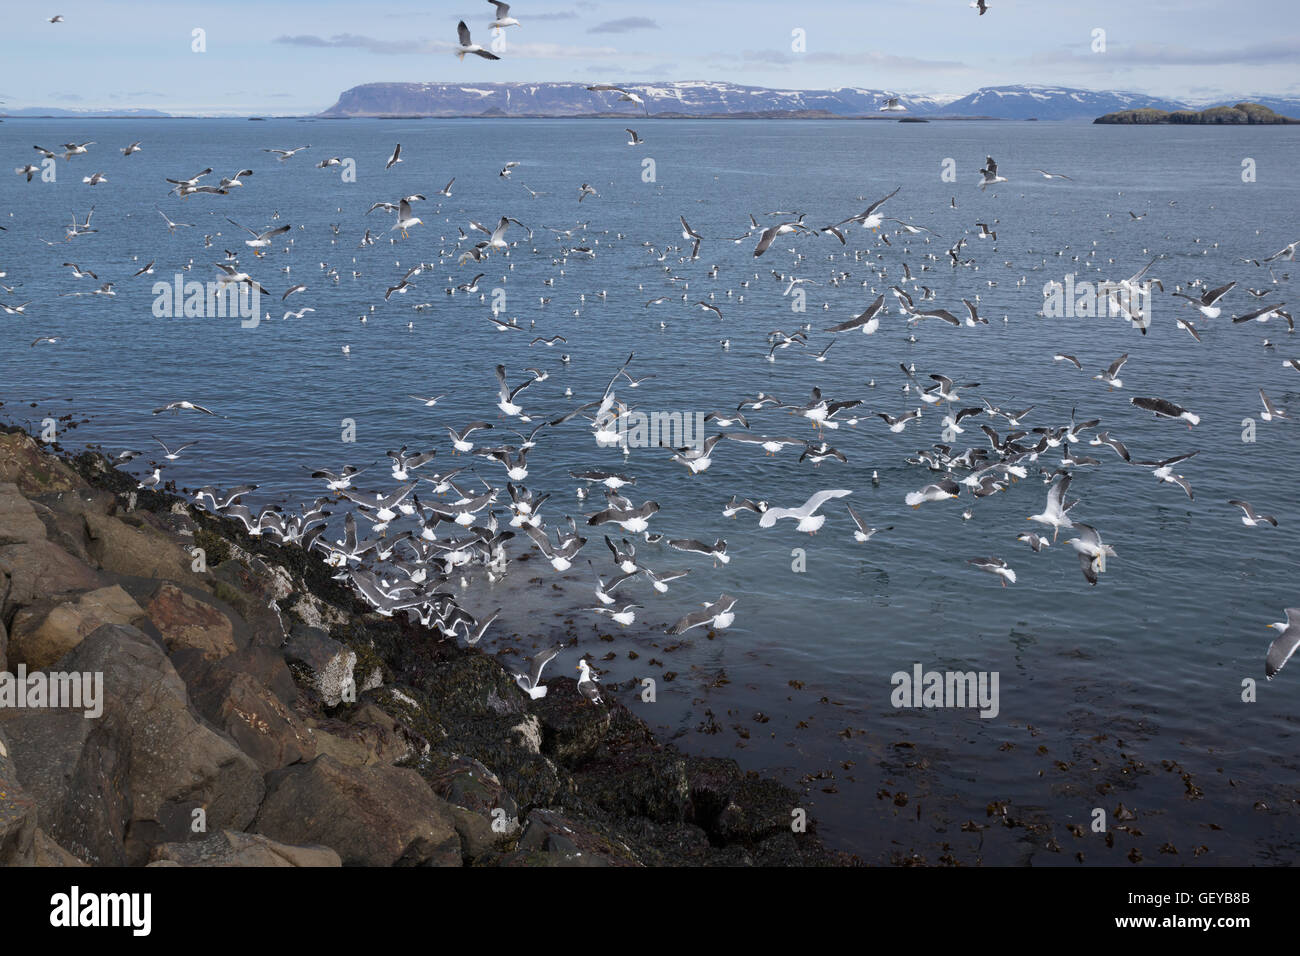 Hundreds of seagulls on coast of Iceland Stock Photo